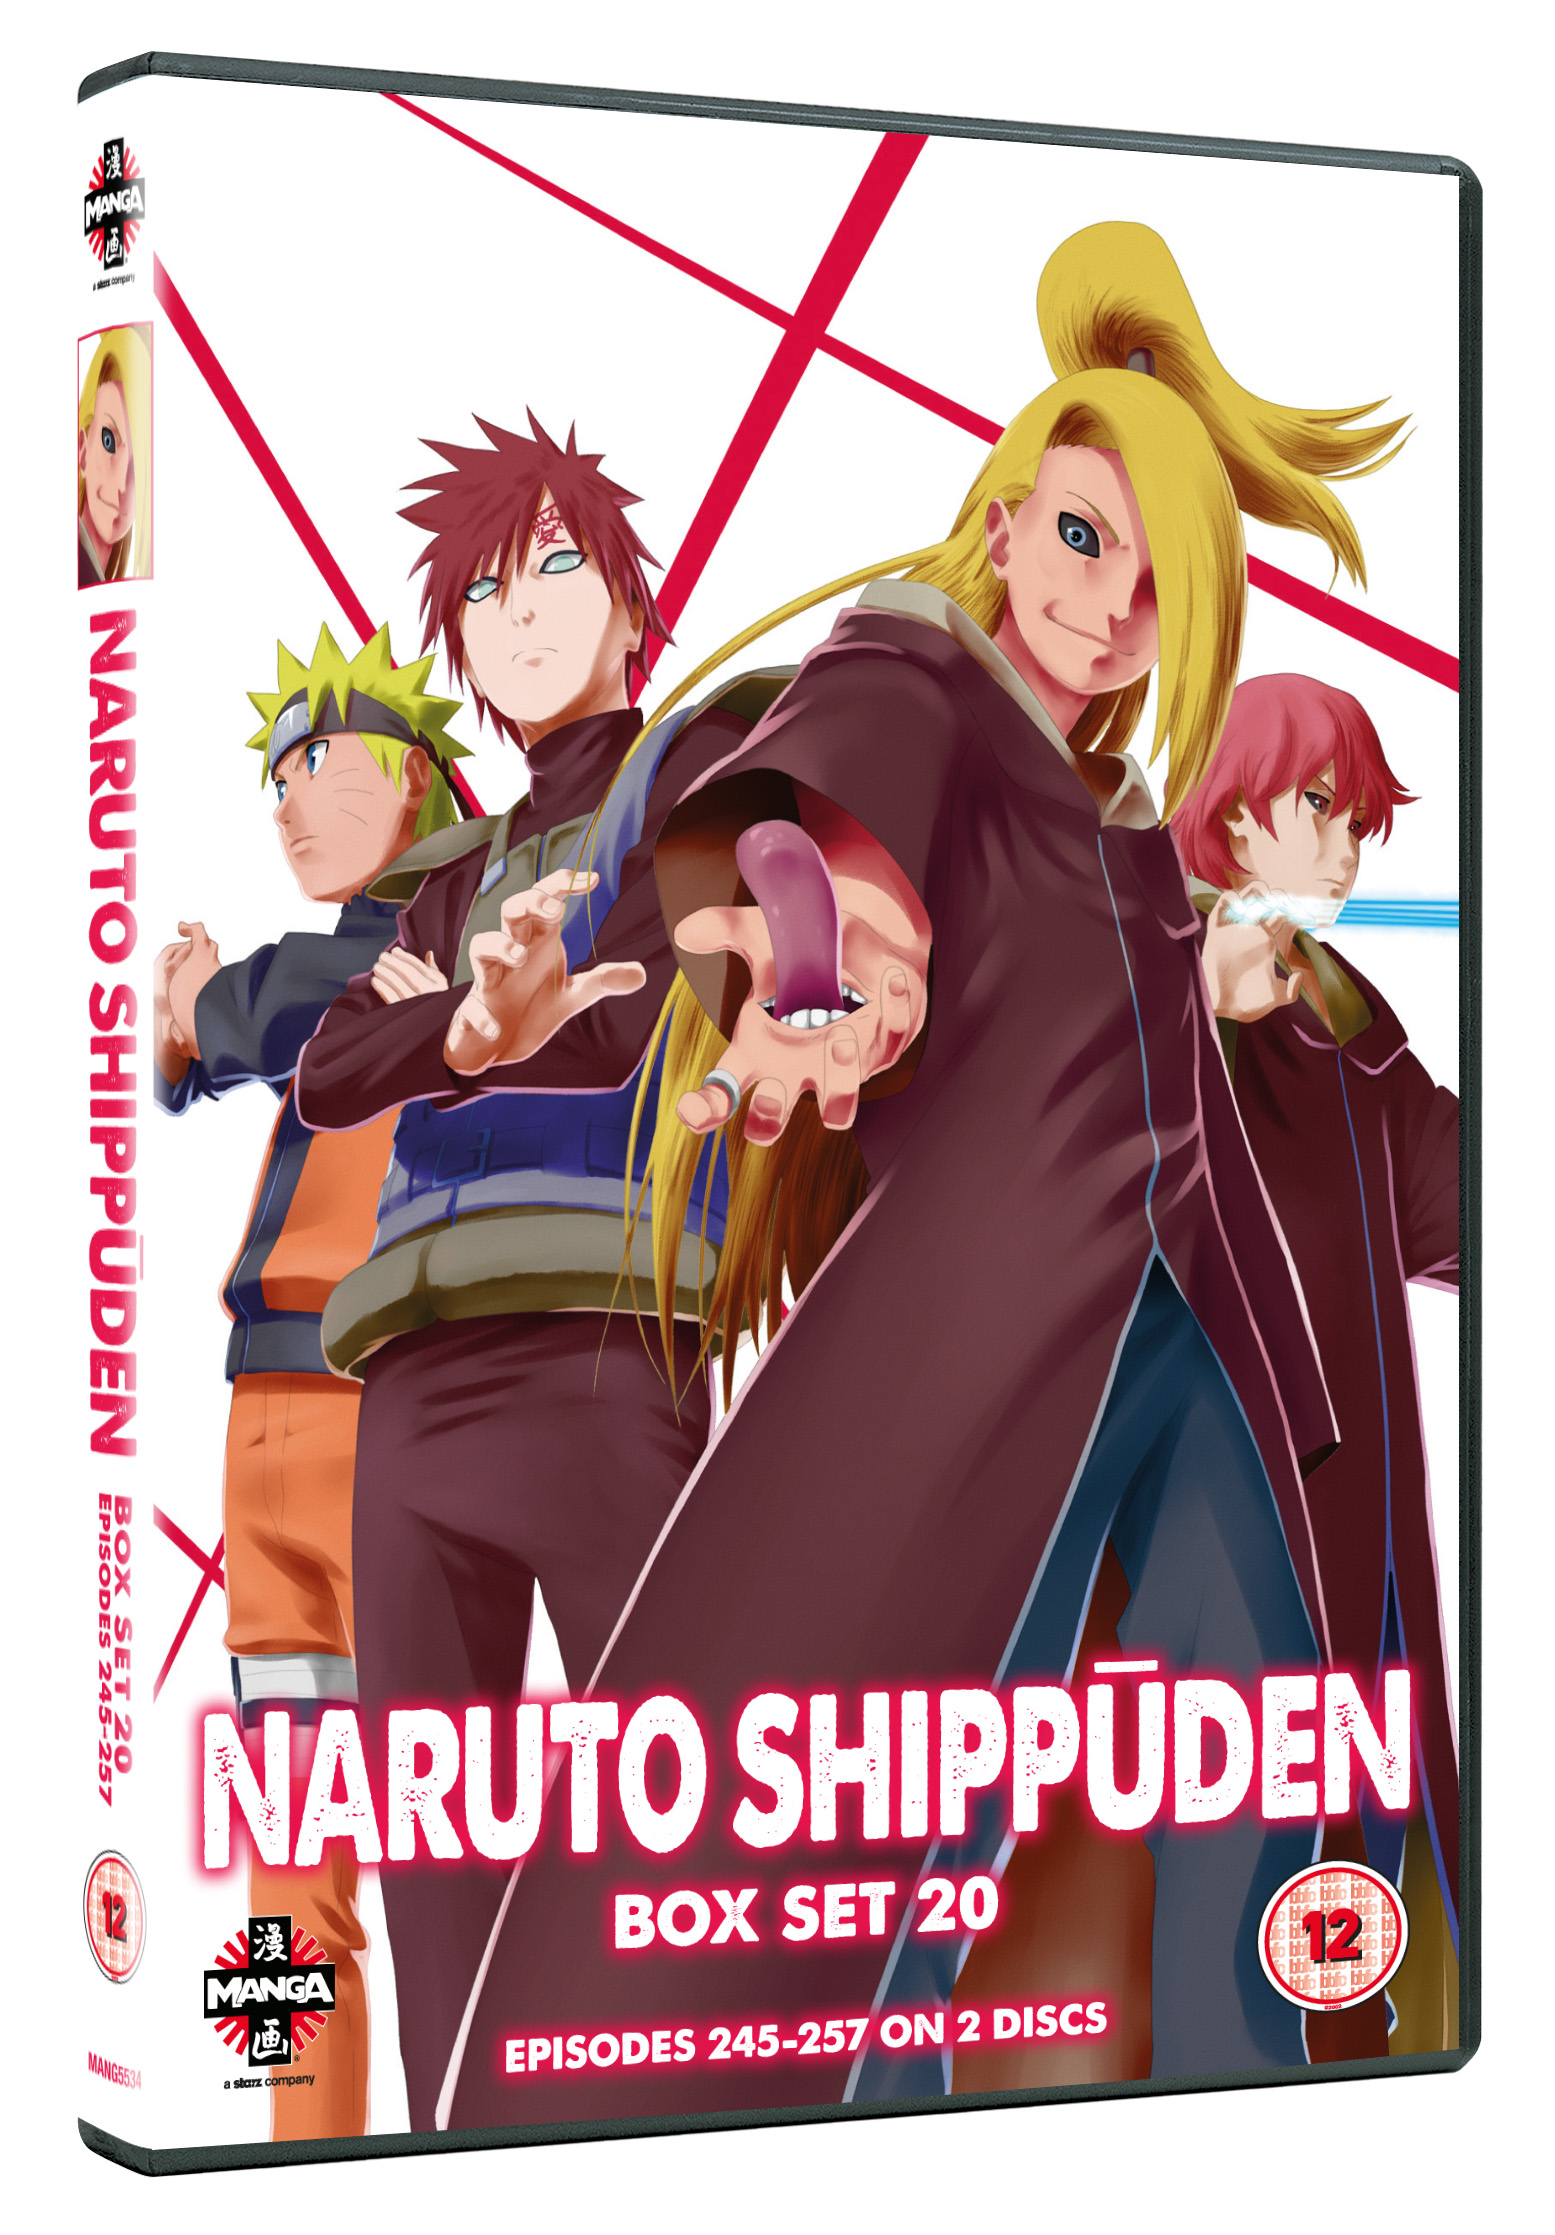 Naruto Shippuden Season 12